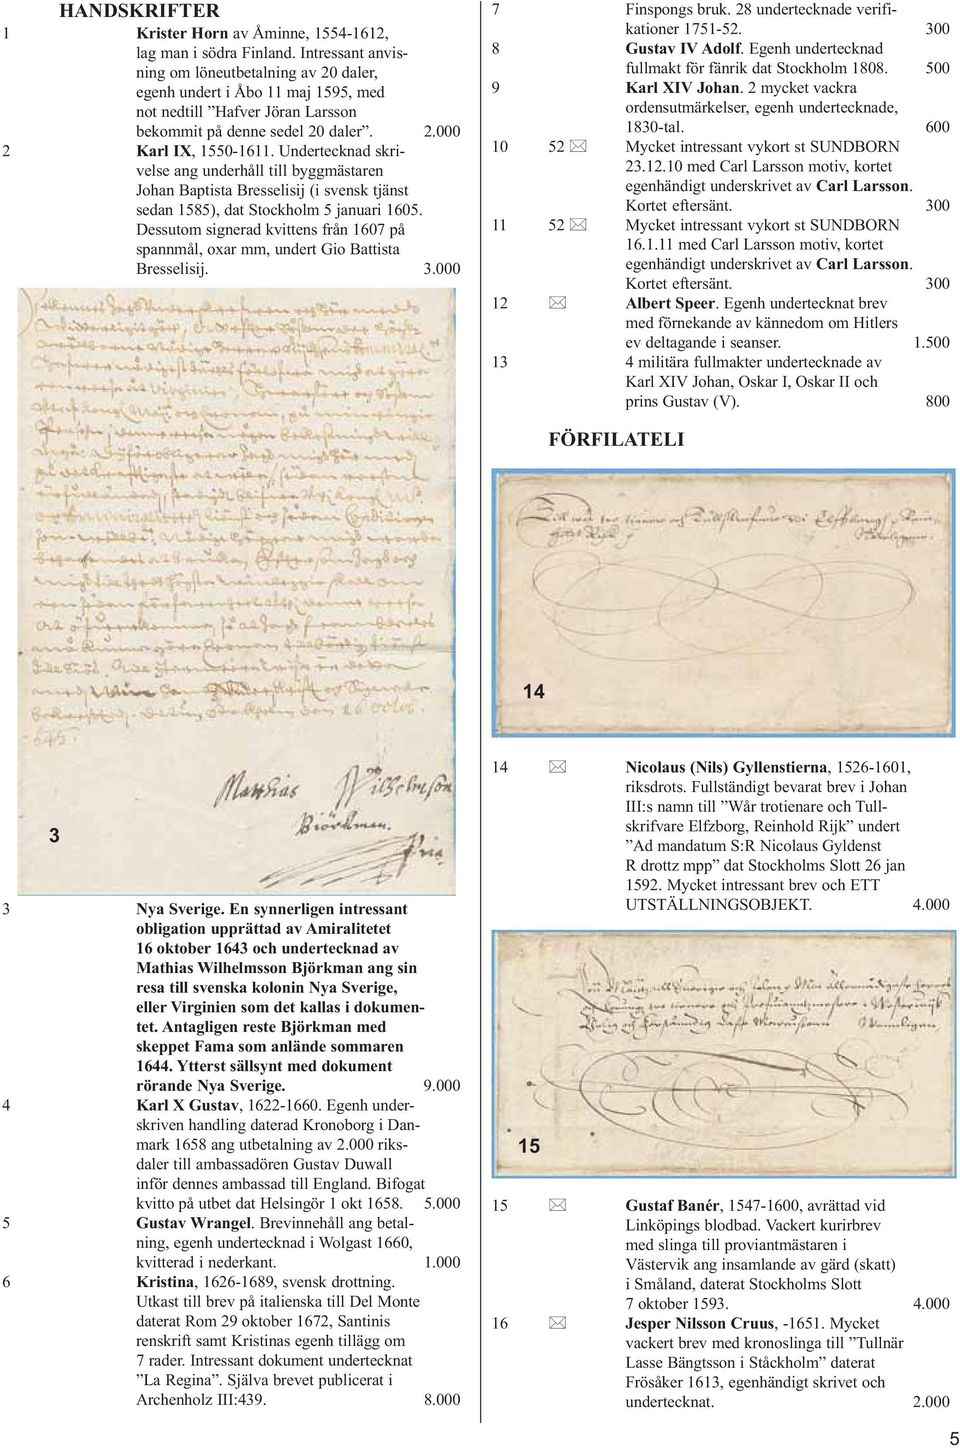 Undertecknad skrivelse ang underhåll till byggmästaren Johan Baptista Bresselisij (i svensk tjänst sedan 1585), dat Stockholm 5 januari 1605.